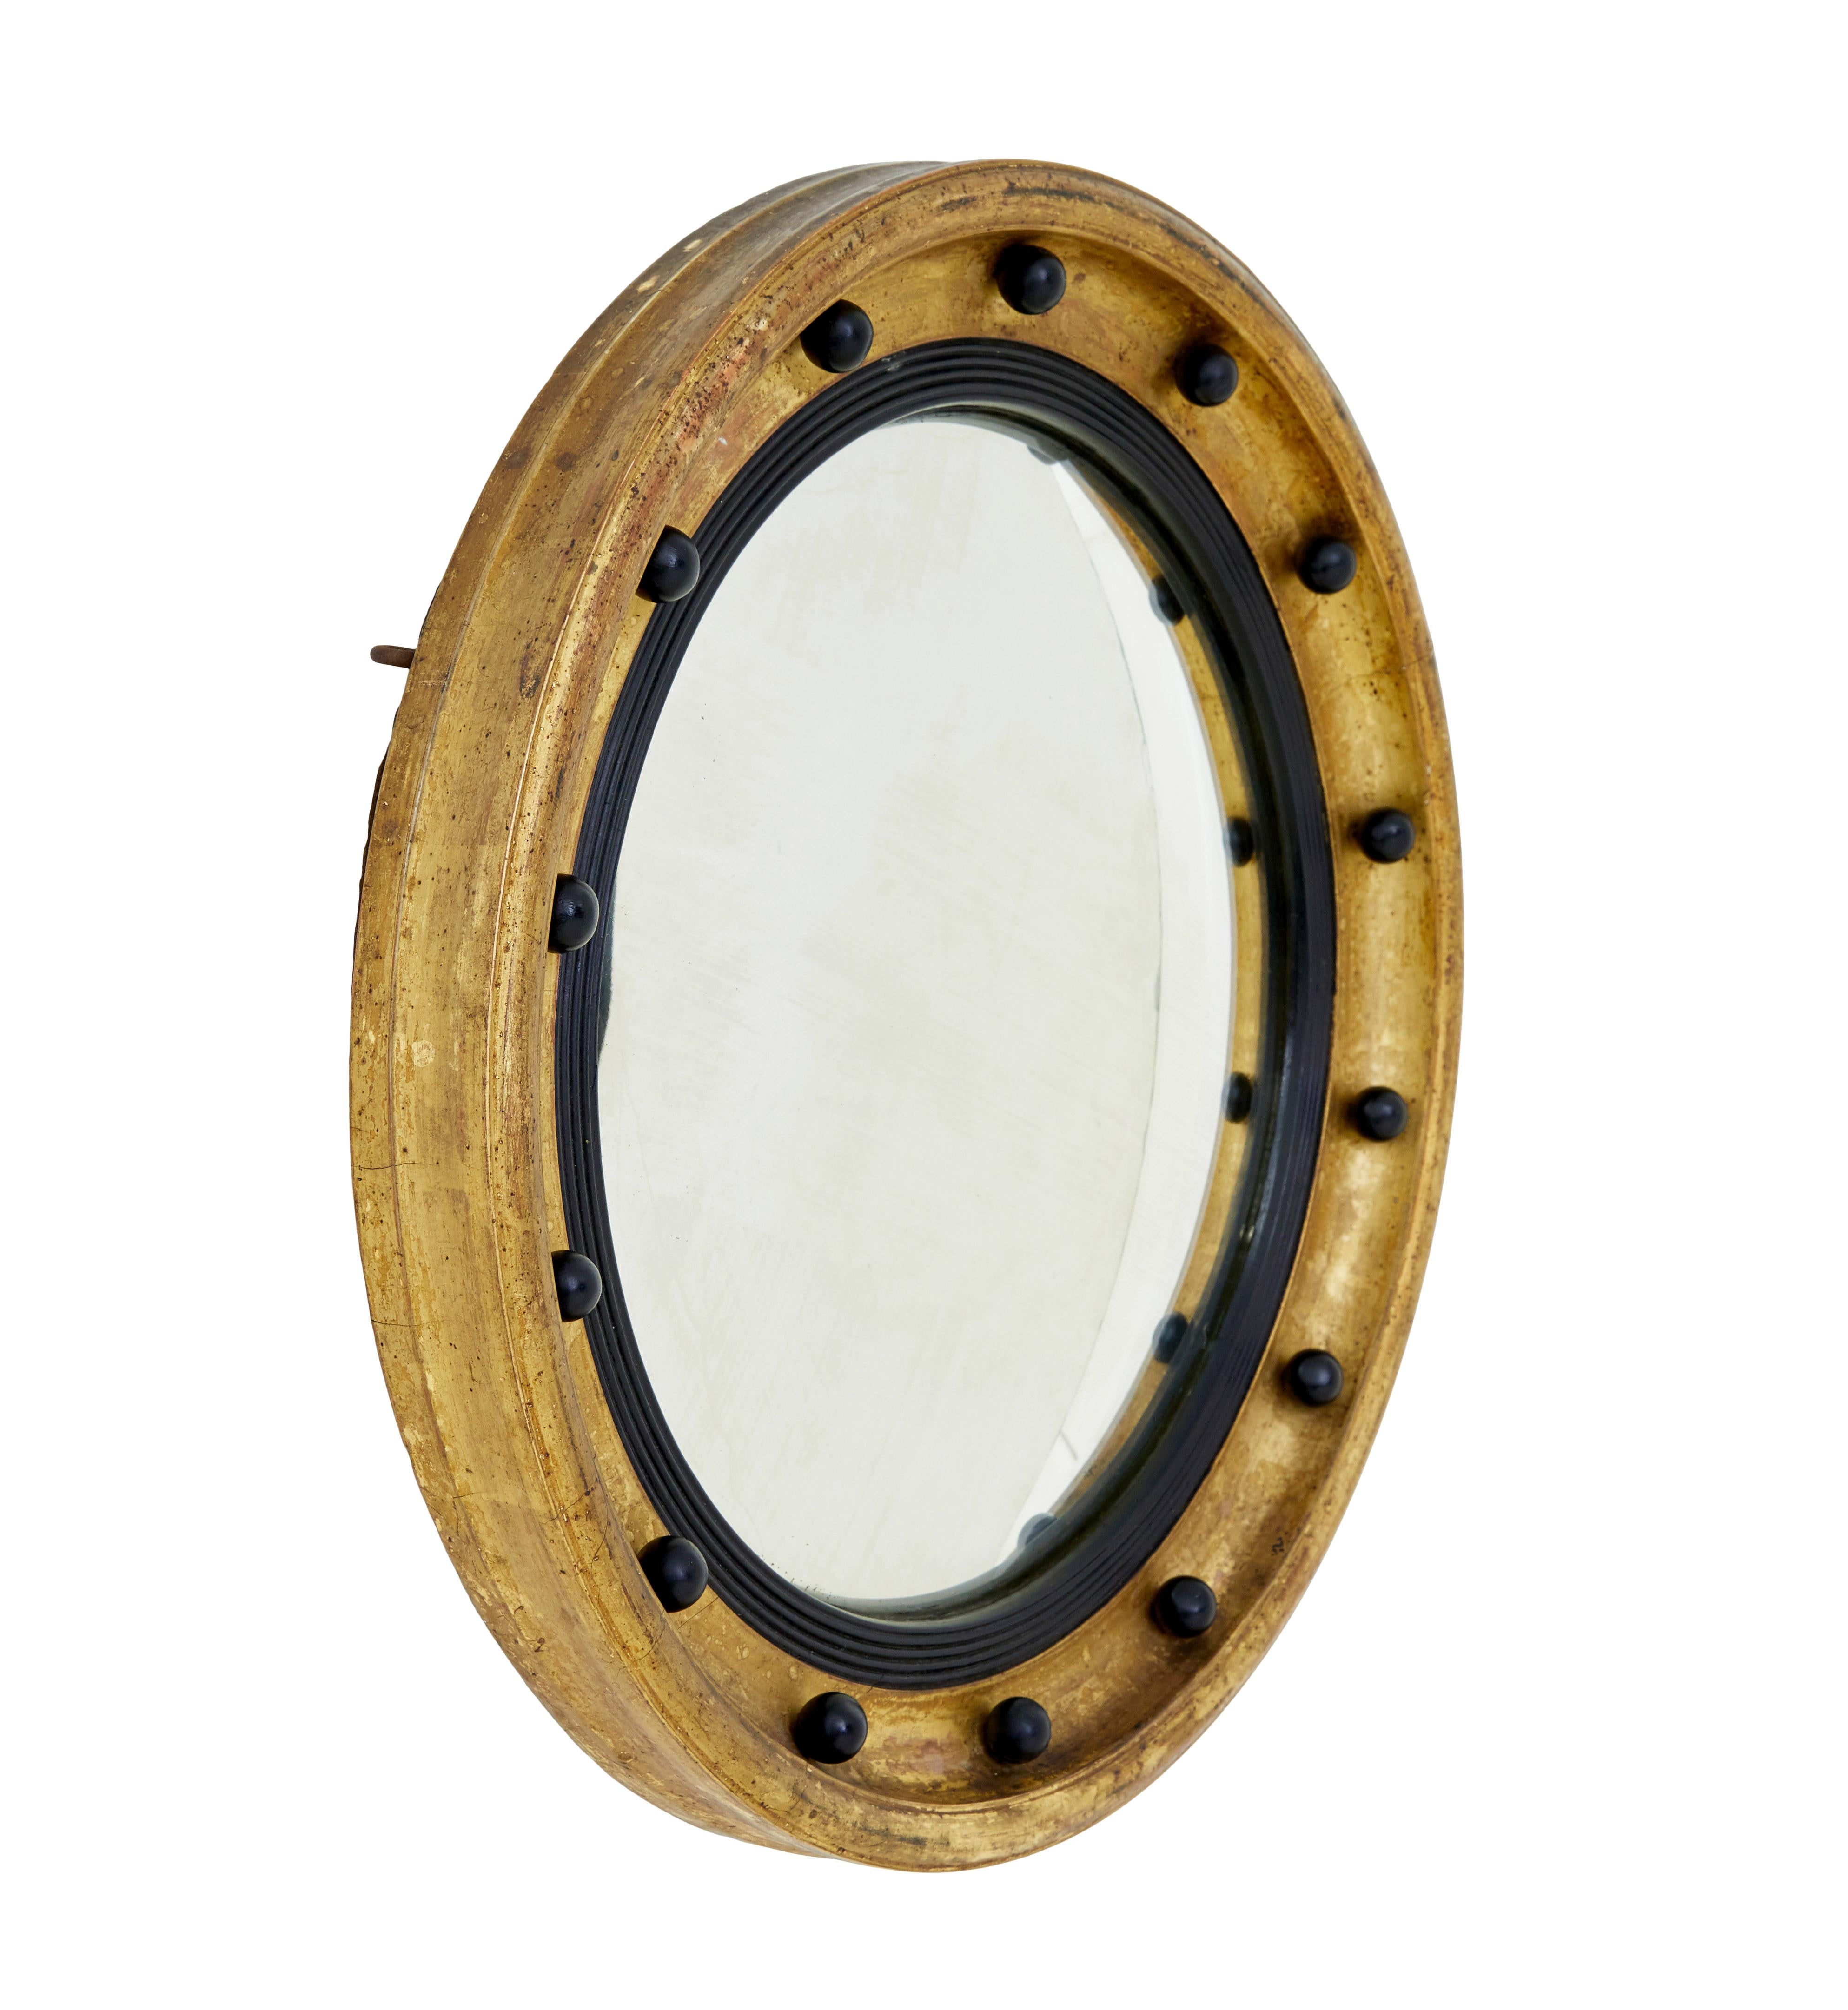 Konvexer Spiegel aus dem 19. Jahrhundert, ebonisiert und vergoldet, um 1870.

Ein runder Spiegel von guter Qualität mit kleinen Proportionen, der sich für mehrere ROOMS im Haus eignet.

Geformter, vergoldeter Außenrahmen, verziert mit ebonisierten